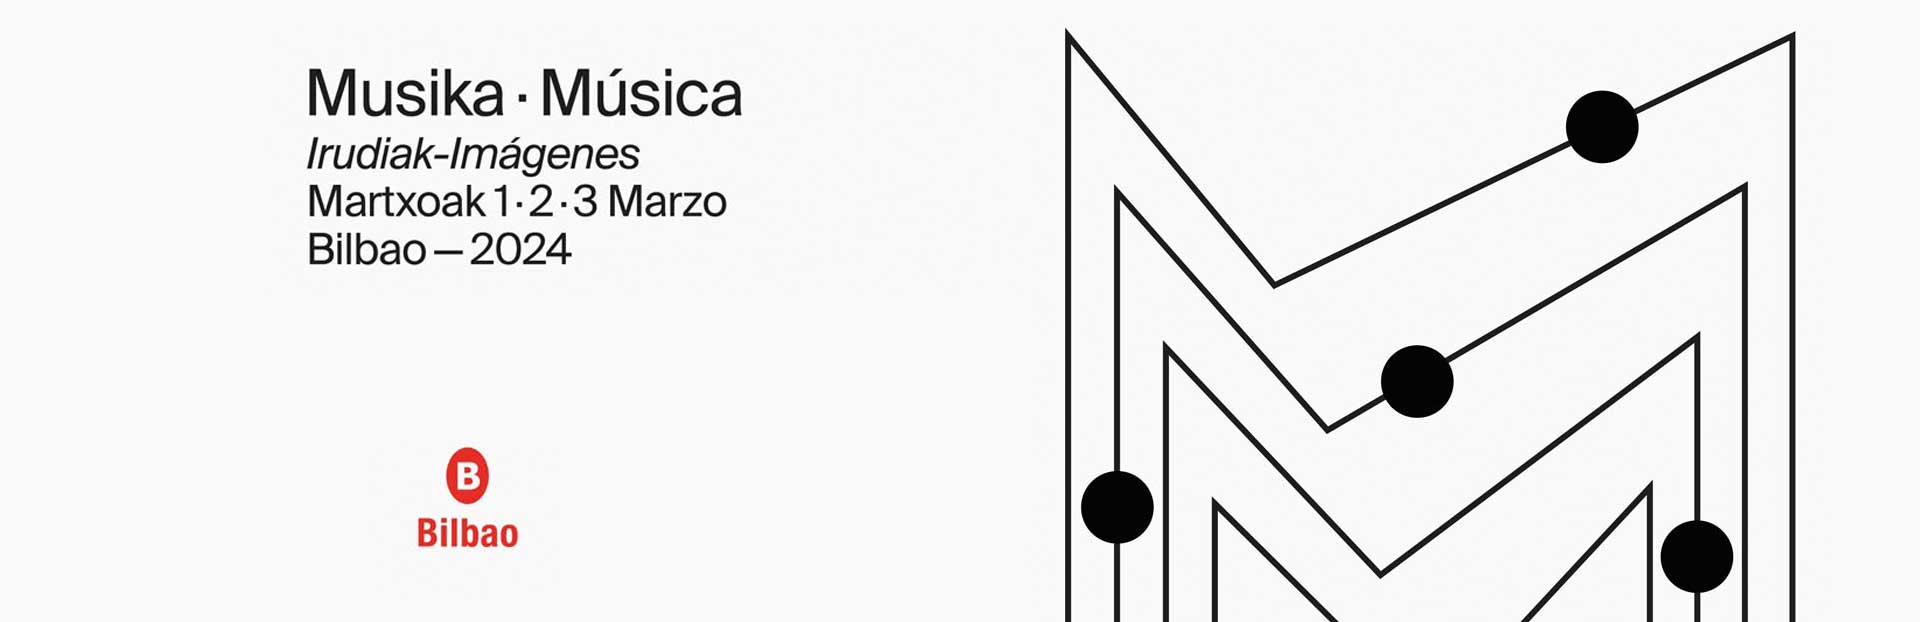 2/3/2024 | O CMUS Manuel Quiroga no festival Musika-Música 2024 / Bilbao